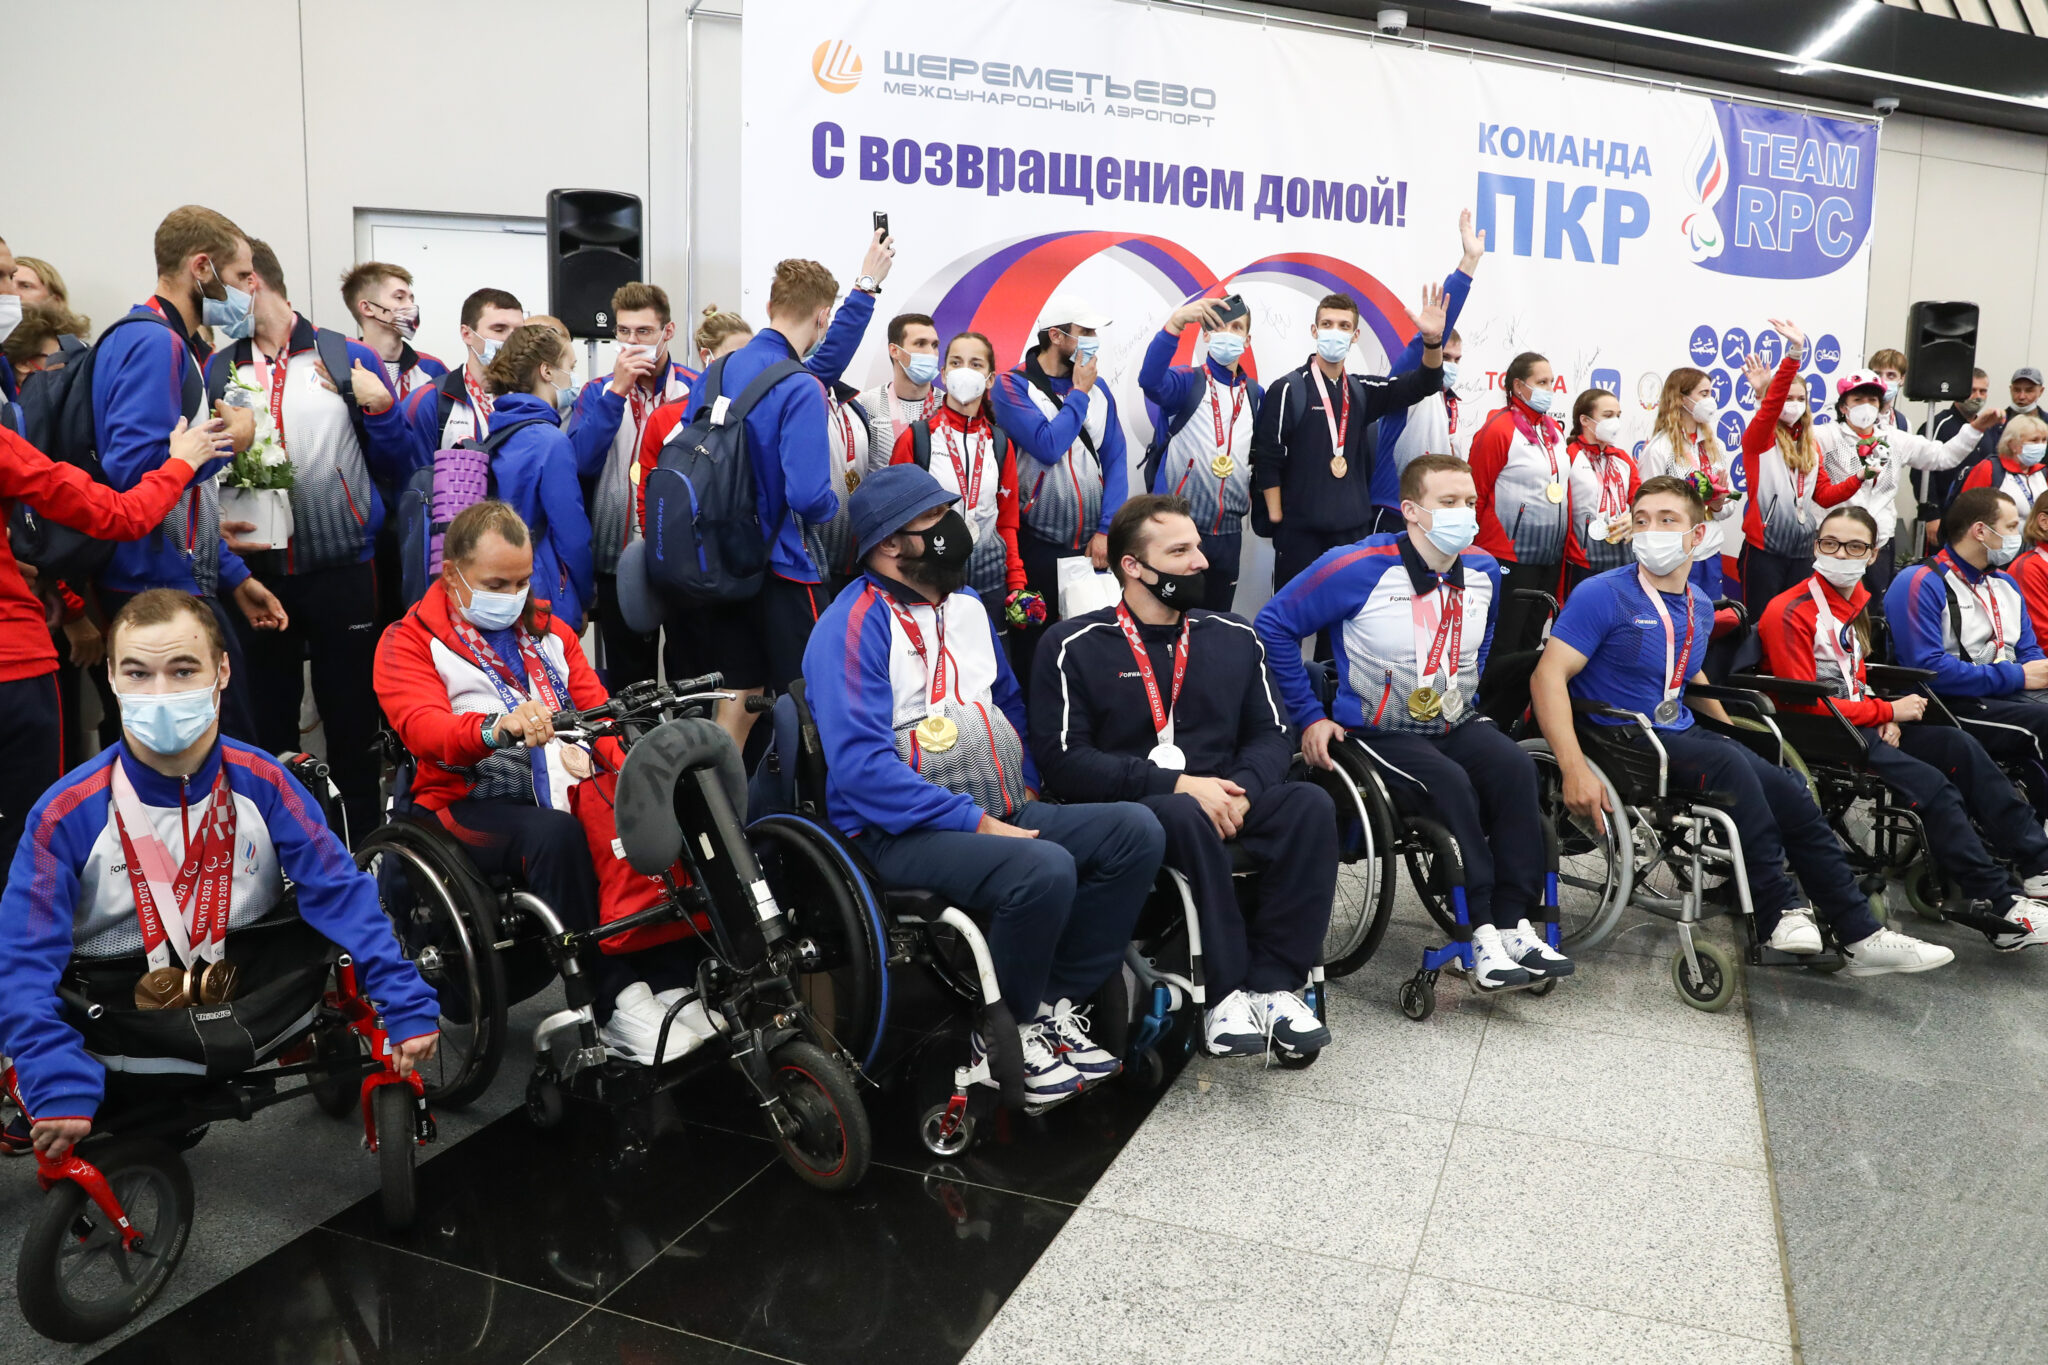 Встреча паоалимпийцев в Шереметьево. Фото Stanislav Krasilnikov/TASS/Scanpix/Leta